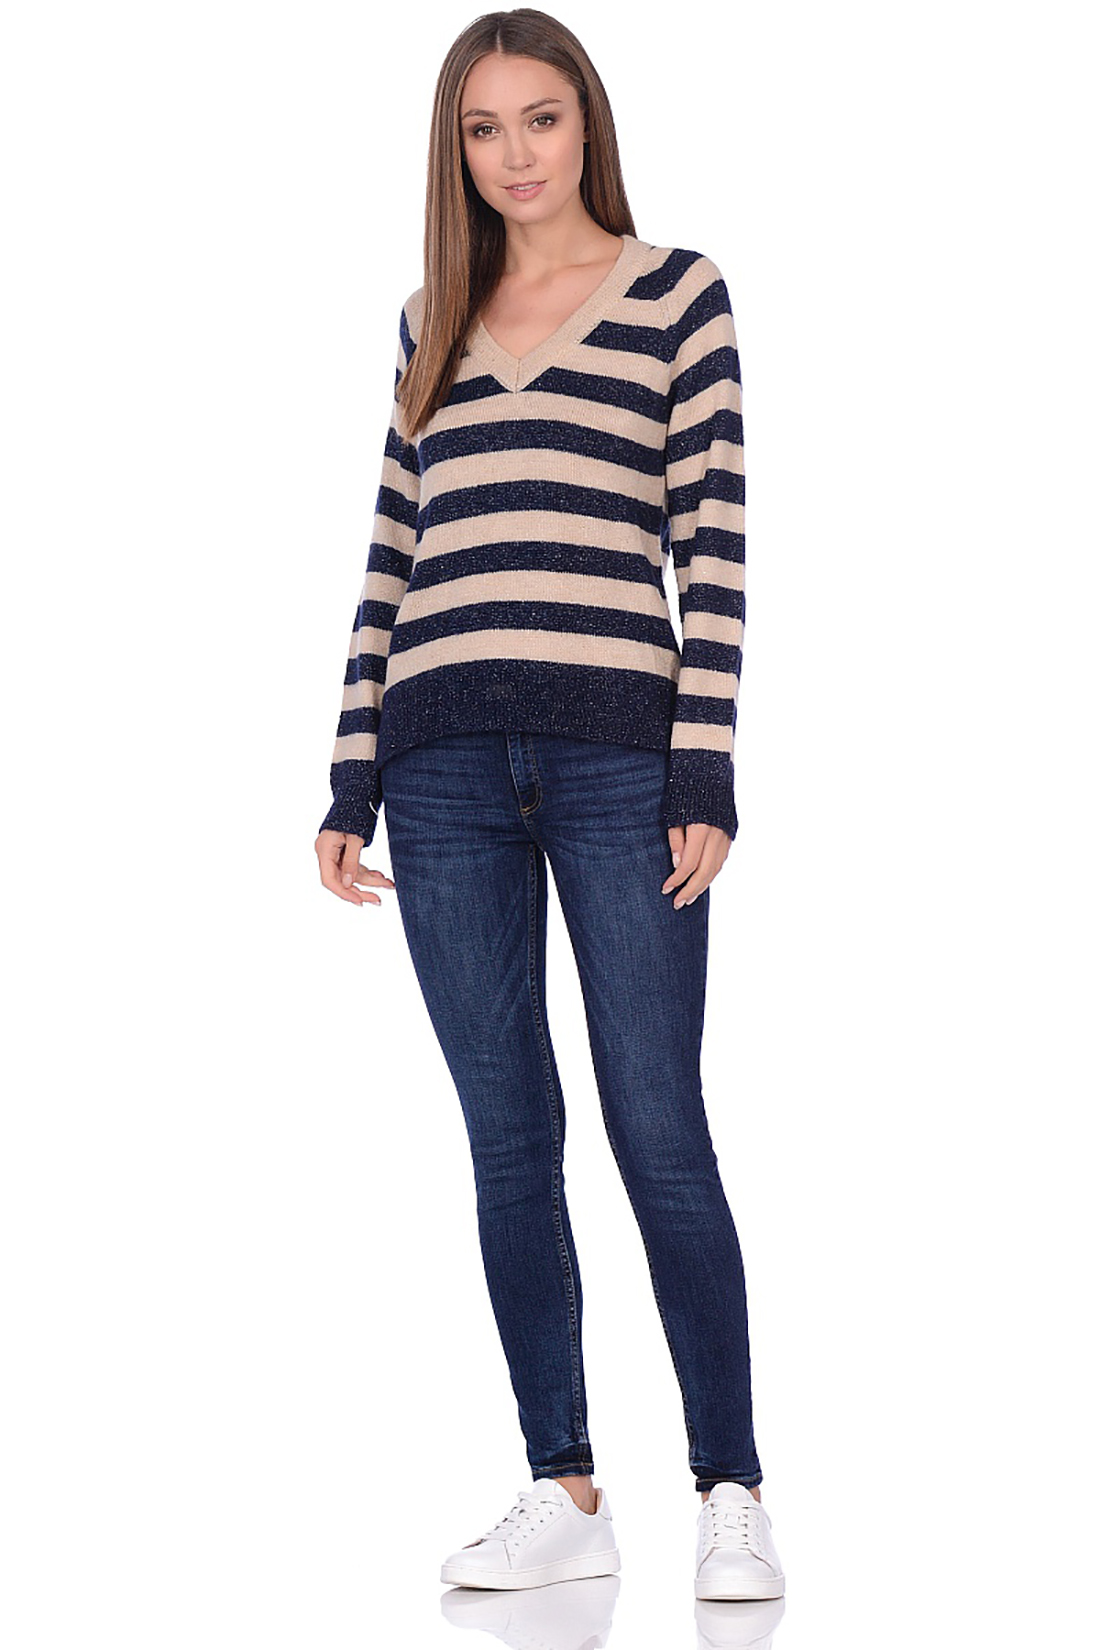 Пуловер с широкими полосами (арт. baon B139516), размер XXL, цвет синий Пуловер с широкими полосами (арт. baon B139516) - фото 3